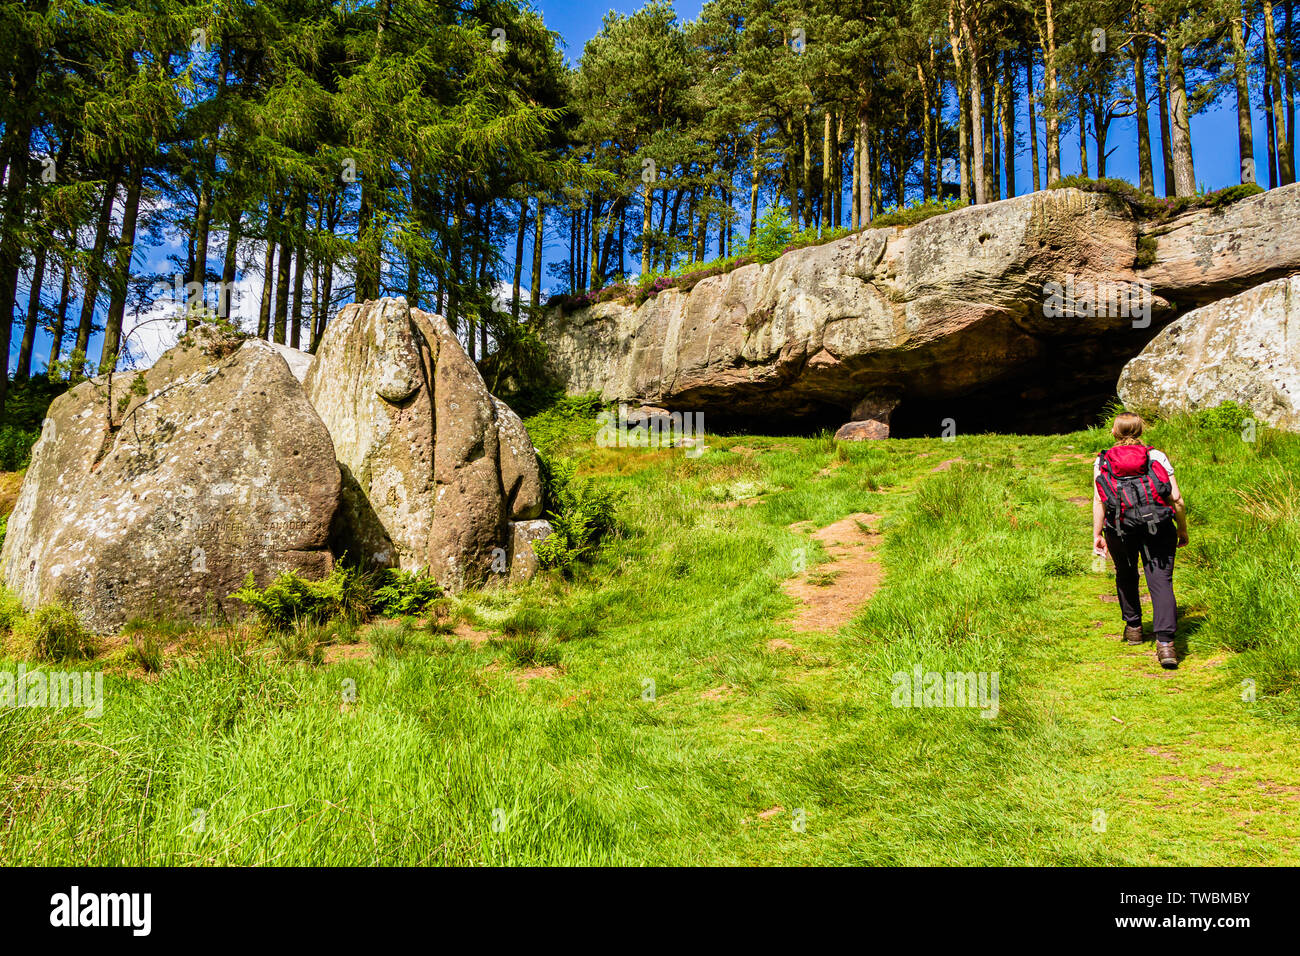 Une femelle walker en direction de St Cuthbert's Cave, un site le long du sentier de St Cuthbert's Way. Holburn, Northumberland, Angleterre. Juin 2017. Banque D'Images